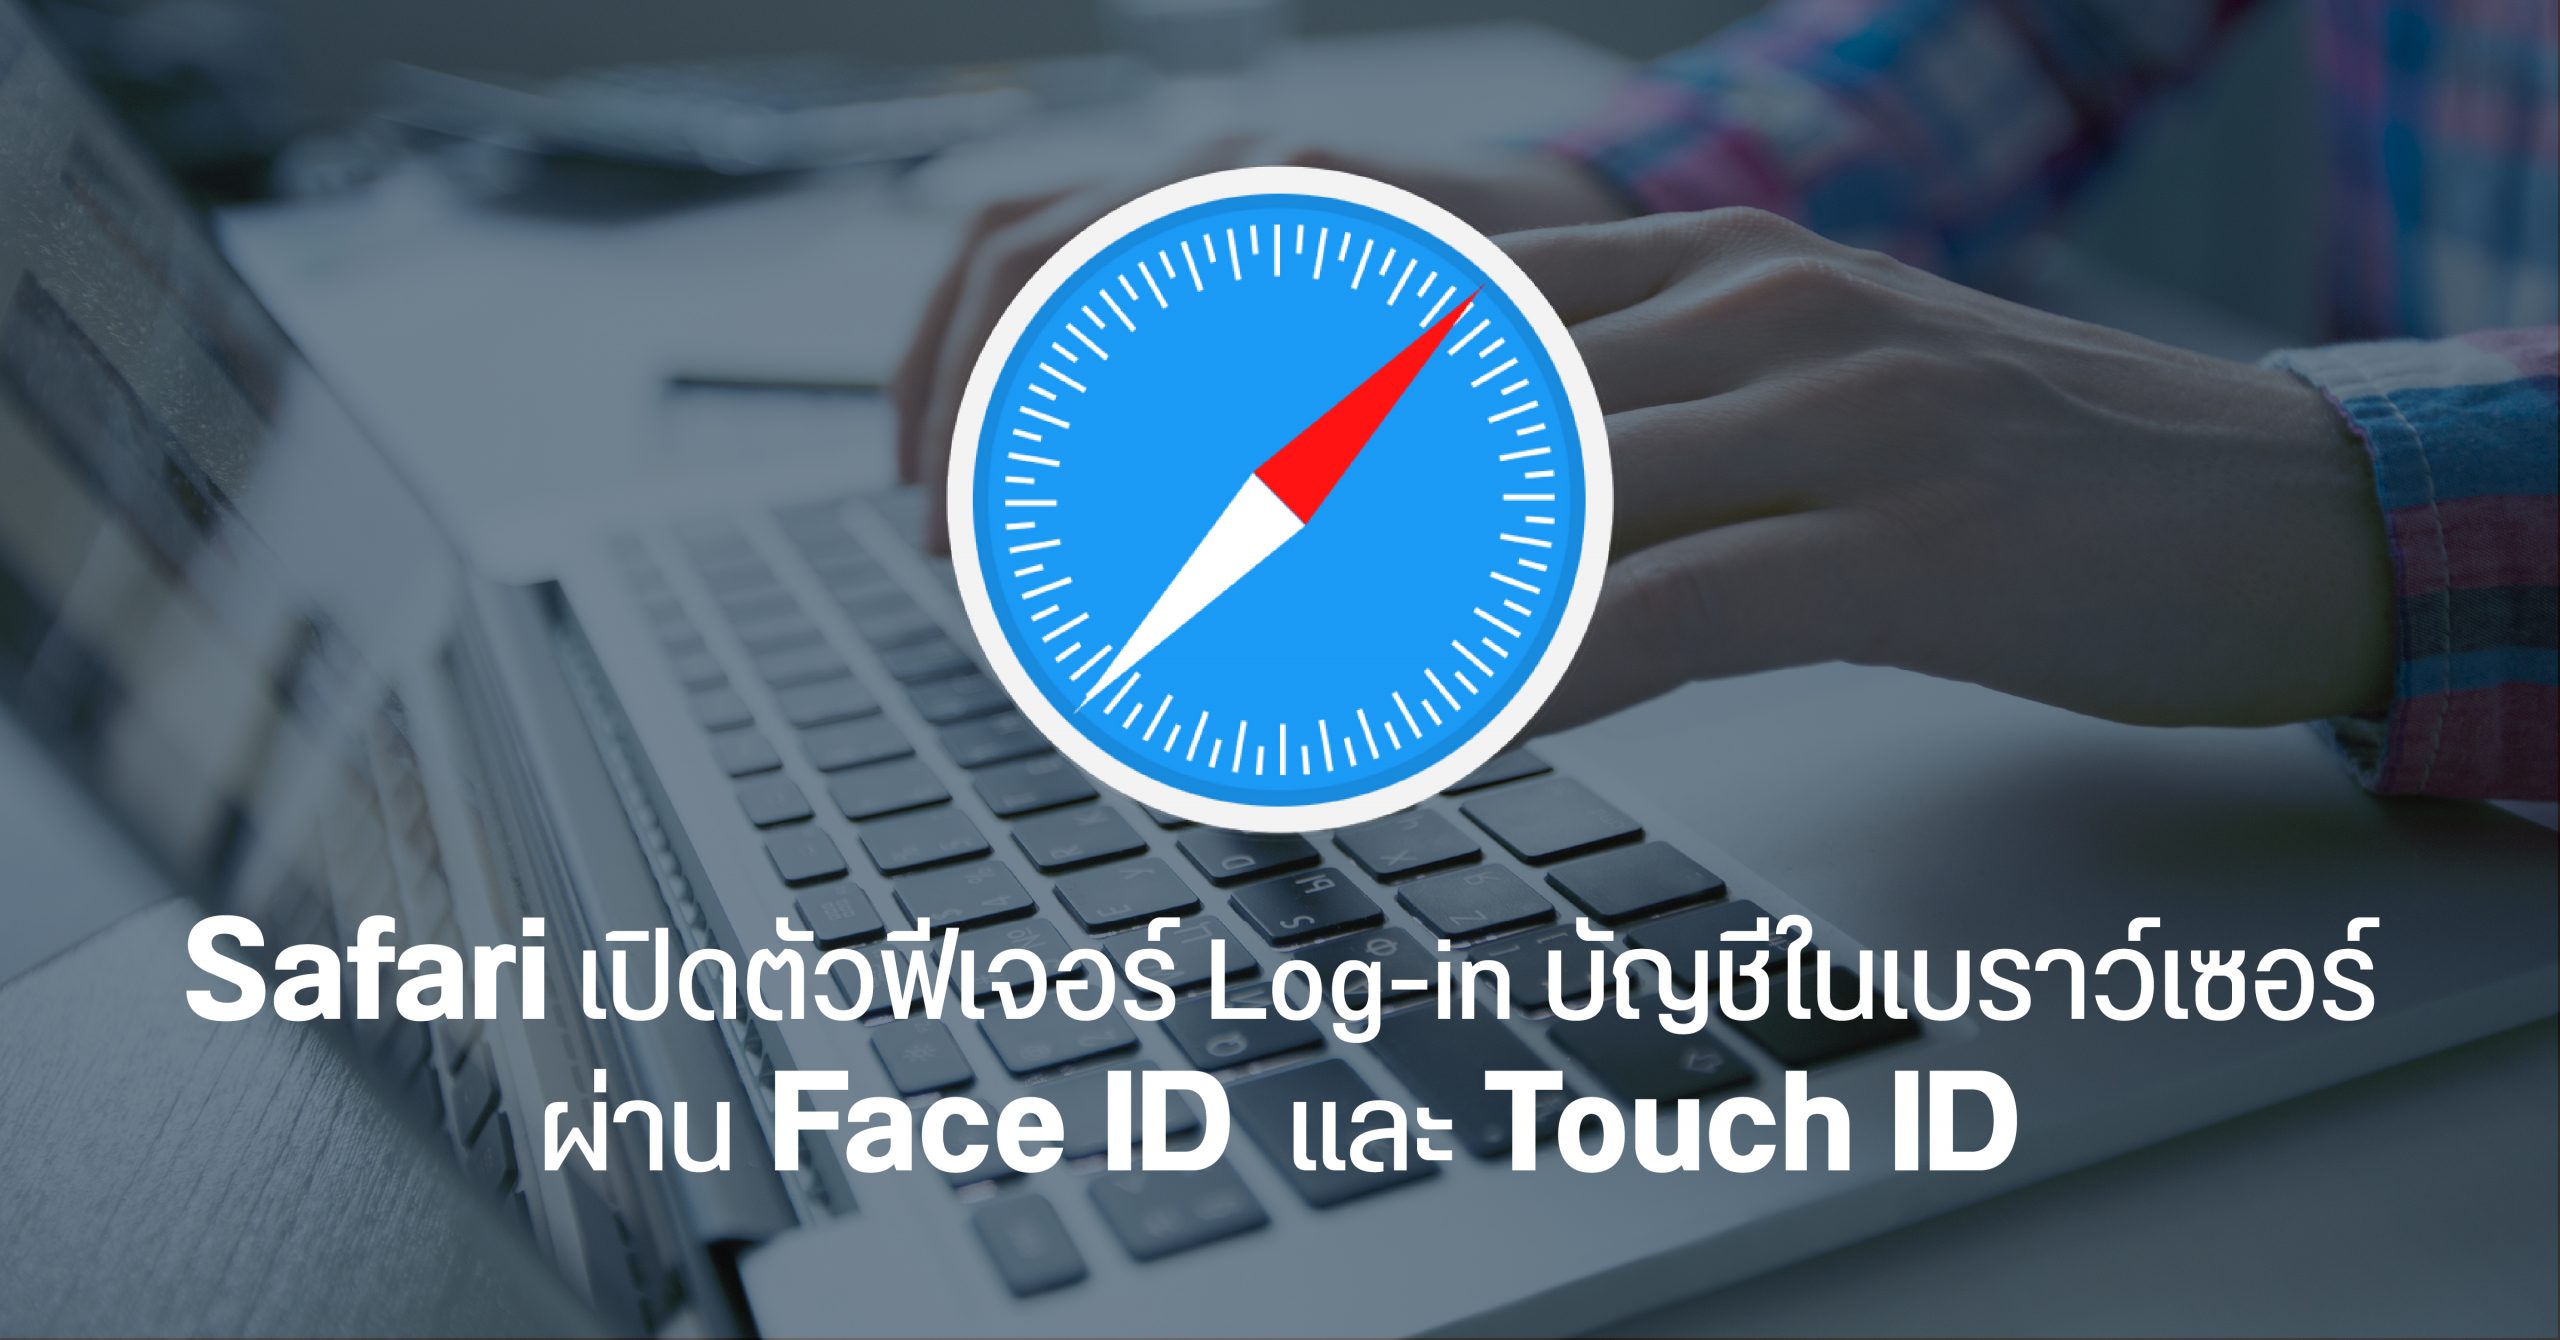 Safari 14 จะรองรับการ Log in ผ่านเบราว์เซอร์ด้วย Face ID และ Touch ID แทนการใช้ Password ภายในปลายปีนี้